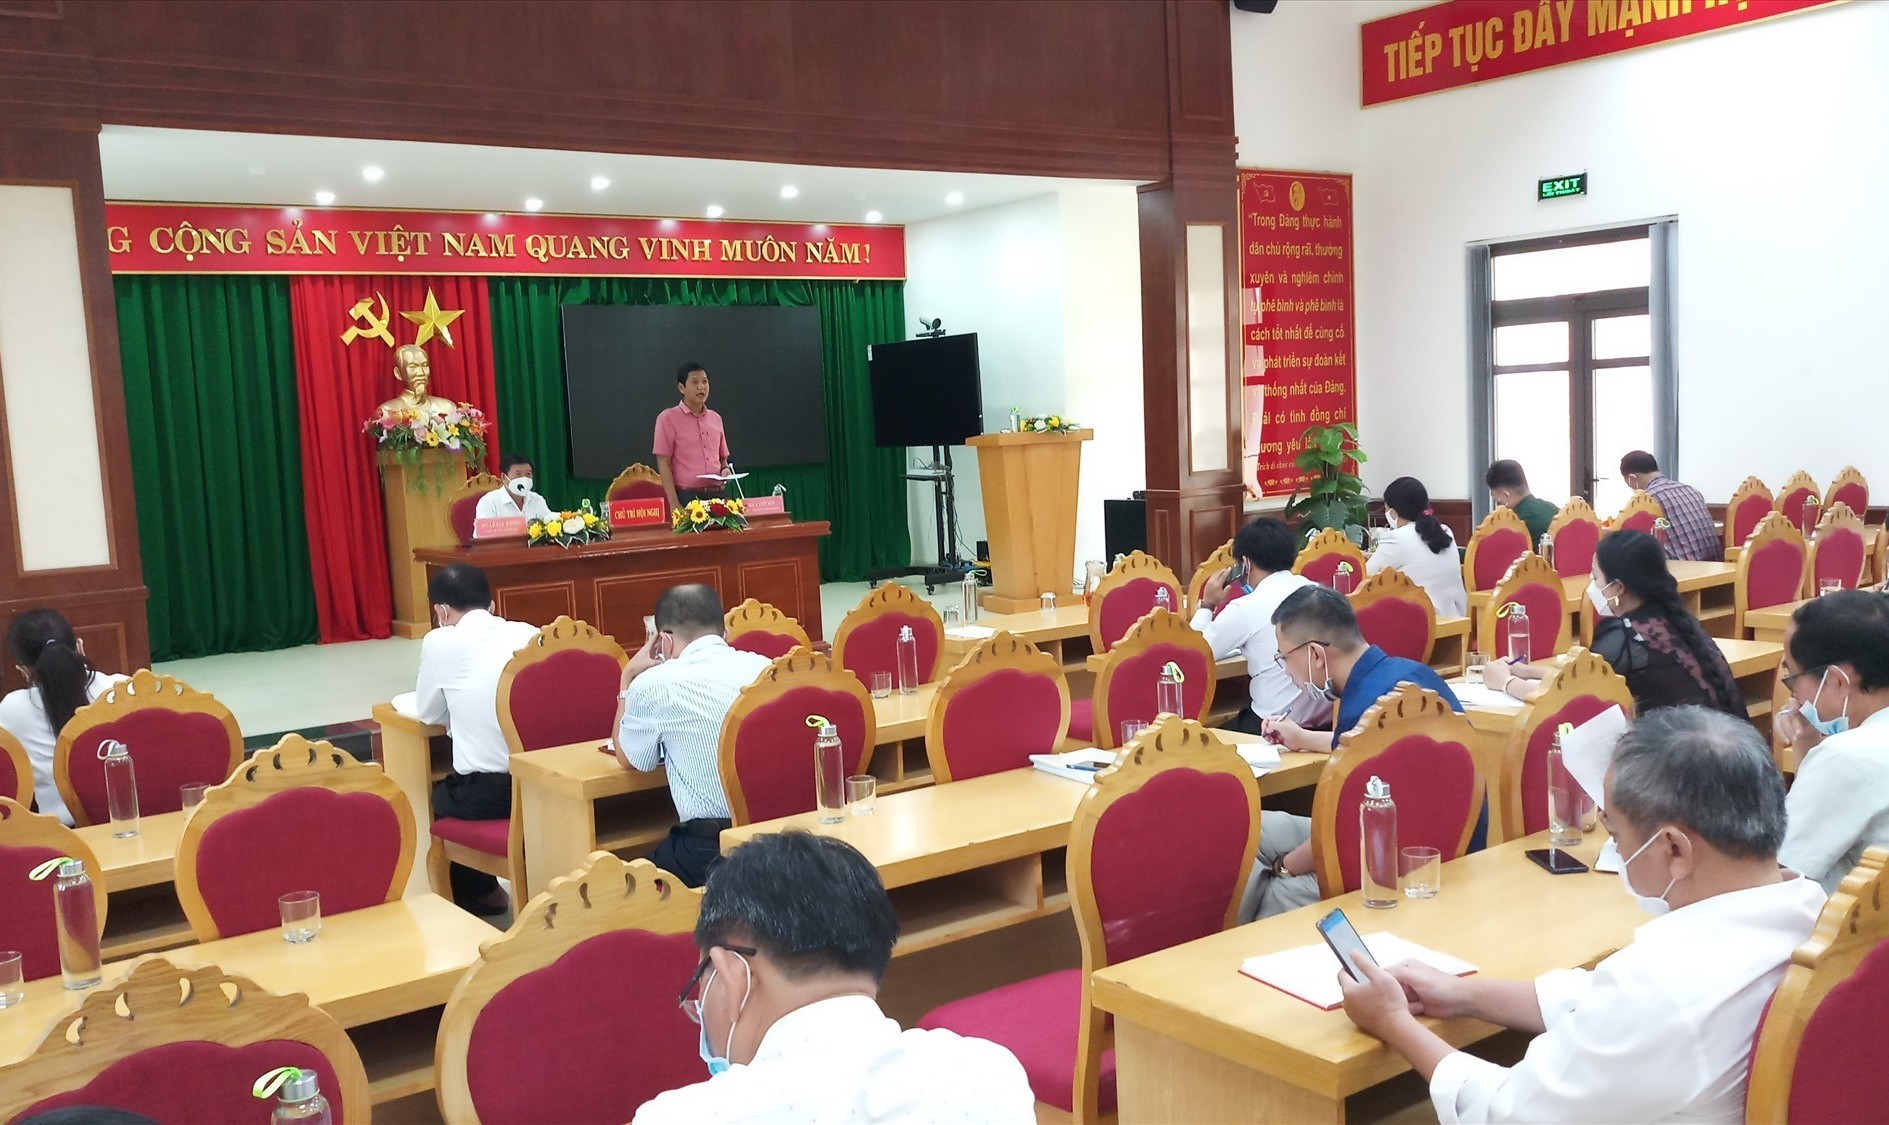 Ông A Viết Sơn - Chủ tịch UBND huyện kiêm Chỉ huy trưởng Trung tâm Chỉ huy phòng chống dịch Covid-19 huyện Nam Giang phát biểu tại cuộc họp. Ảnh: A.N